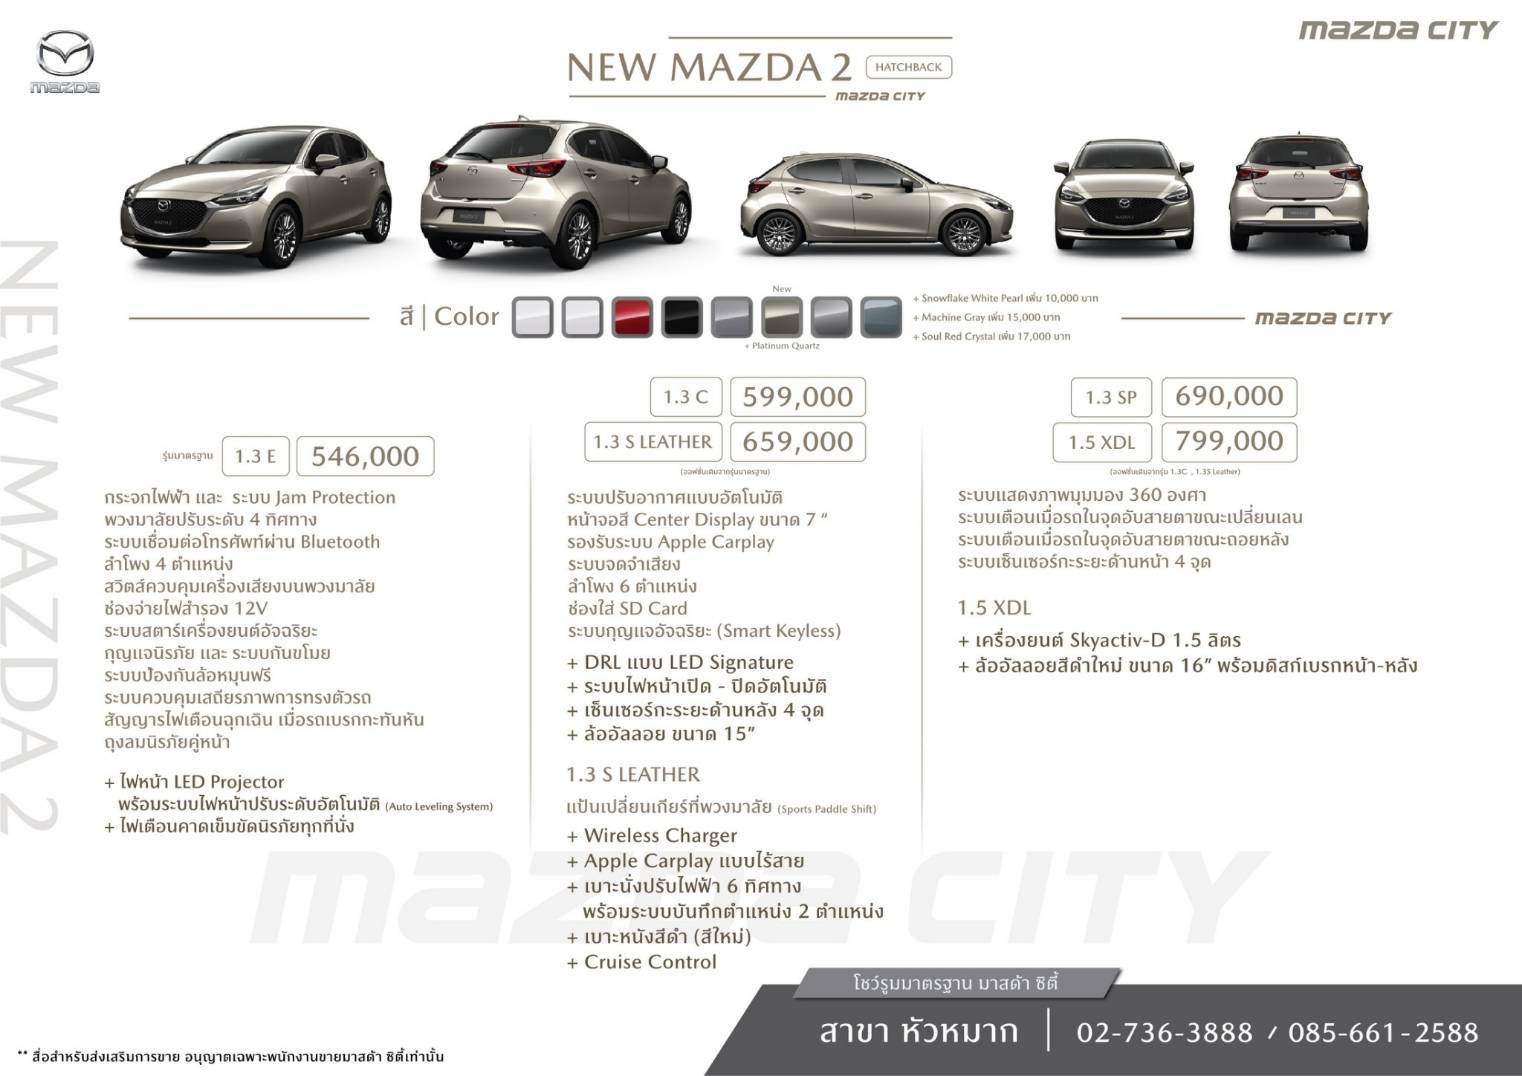 Spec New Mazda 2 - Mazda City